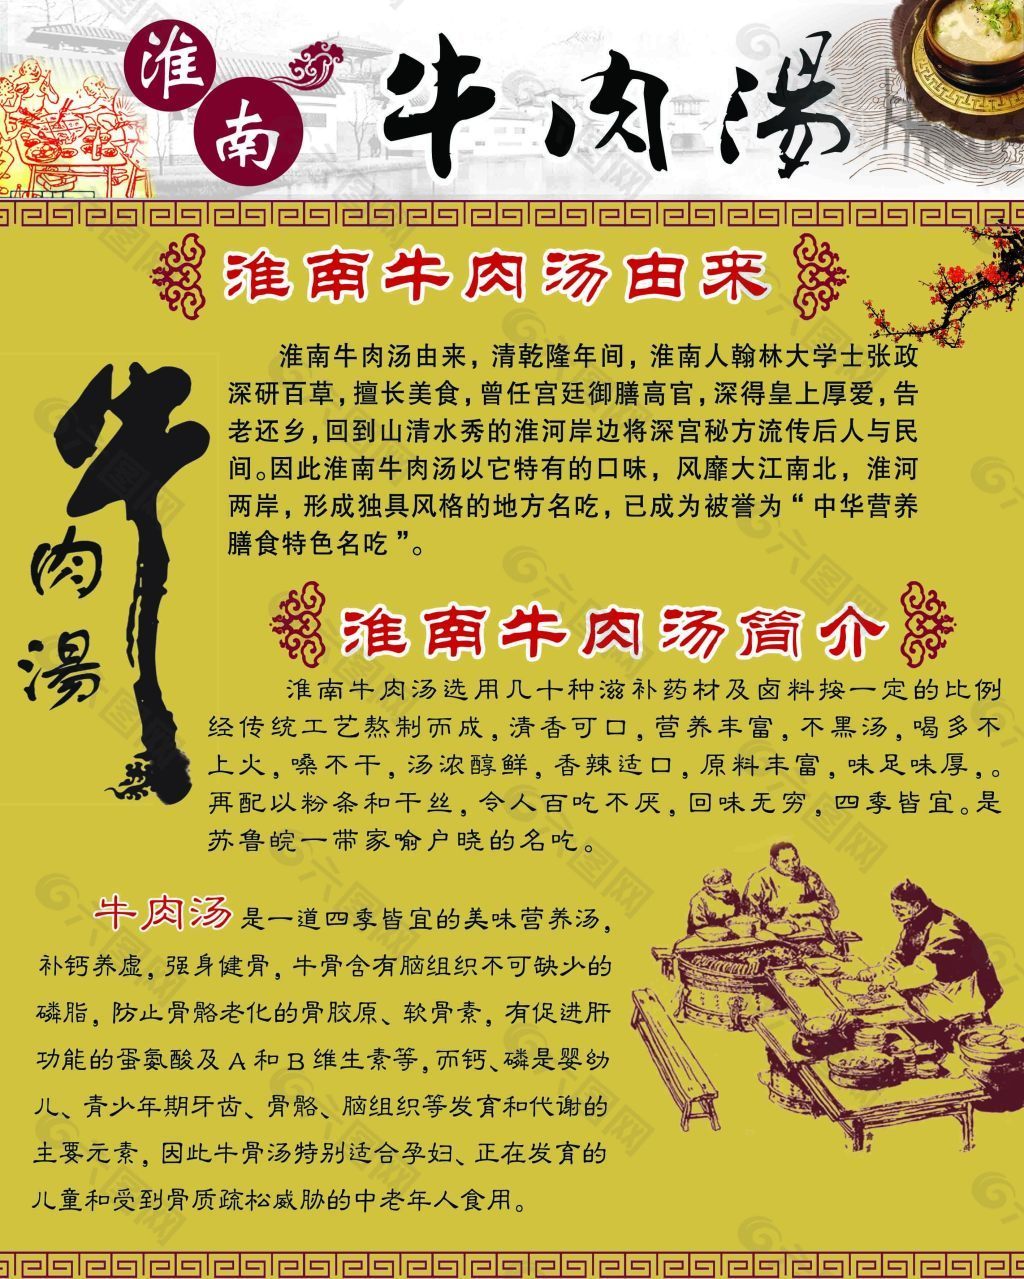 淮南牛肉汤平面广告素材免费下载(图片编号:4520273)